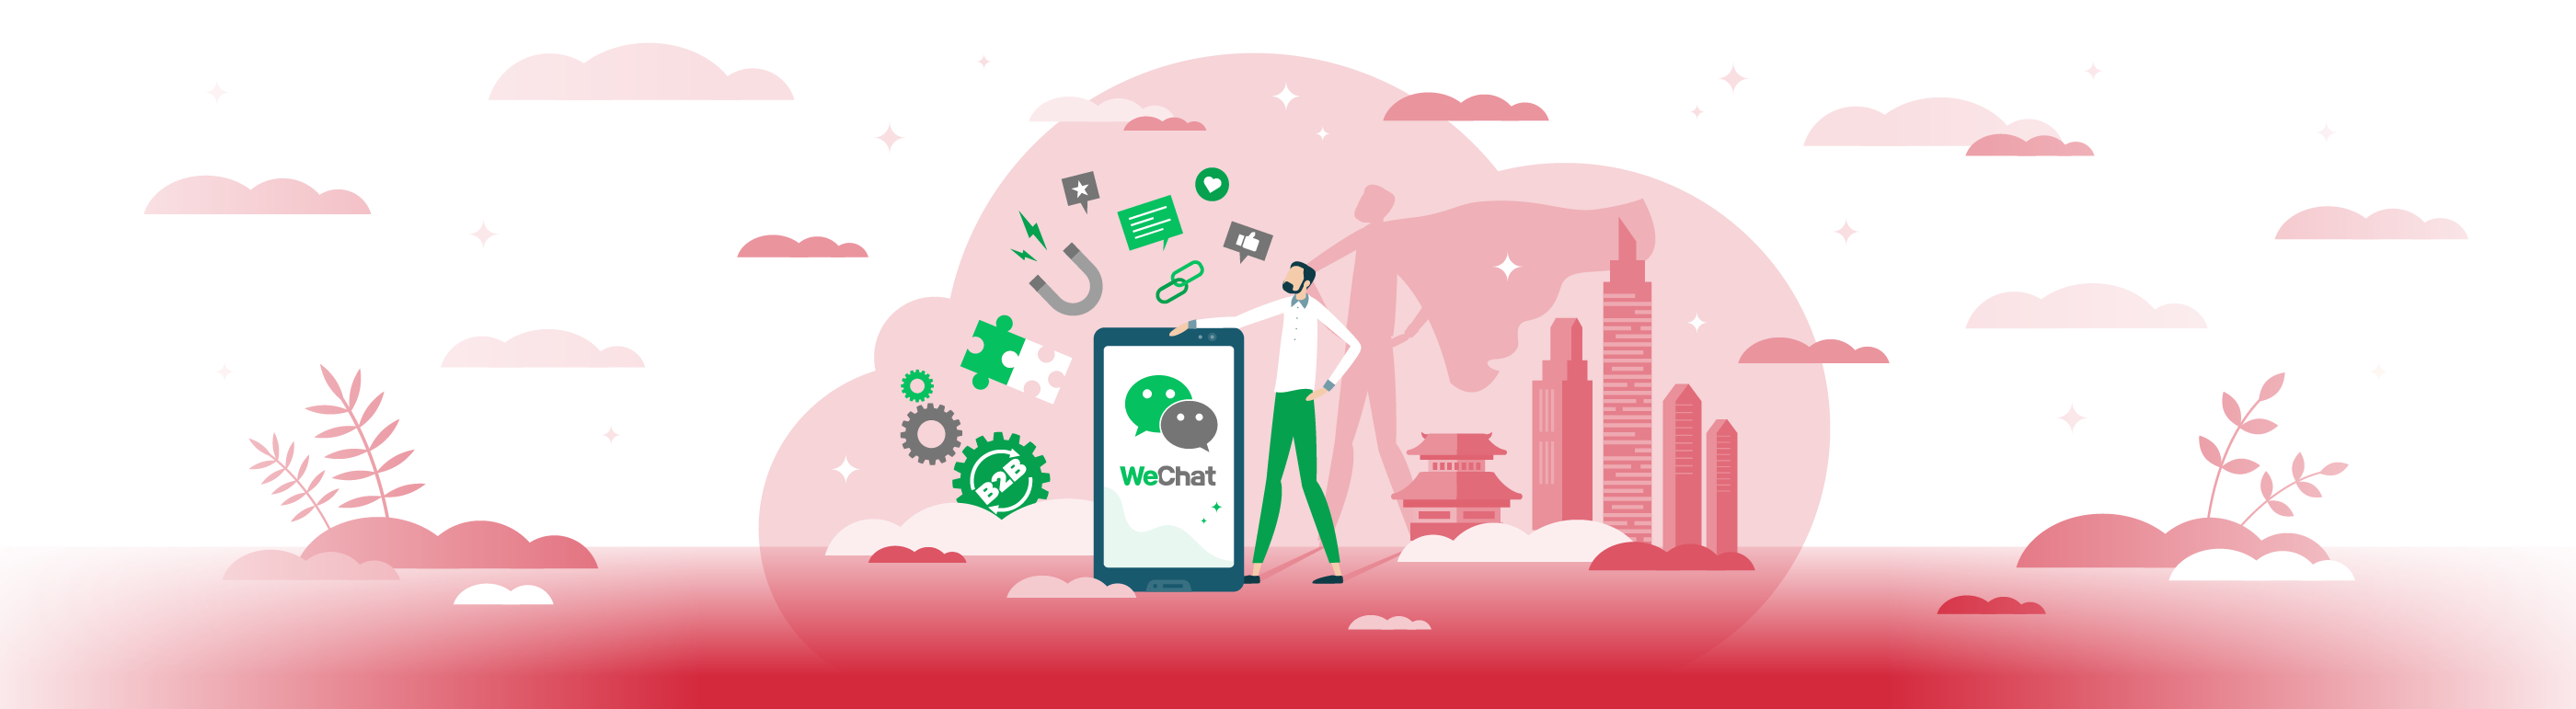 WeChat: mehr als eine App - das ultimative Instrument, um chinesische Verbraucher zu erreichen oder B2B-Leads zu generieren